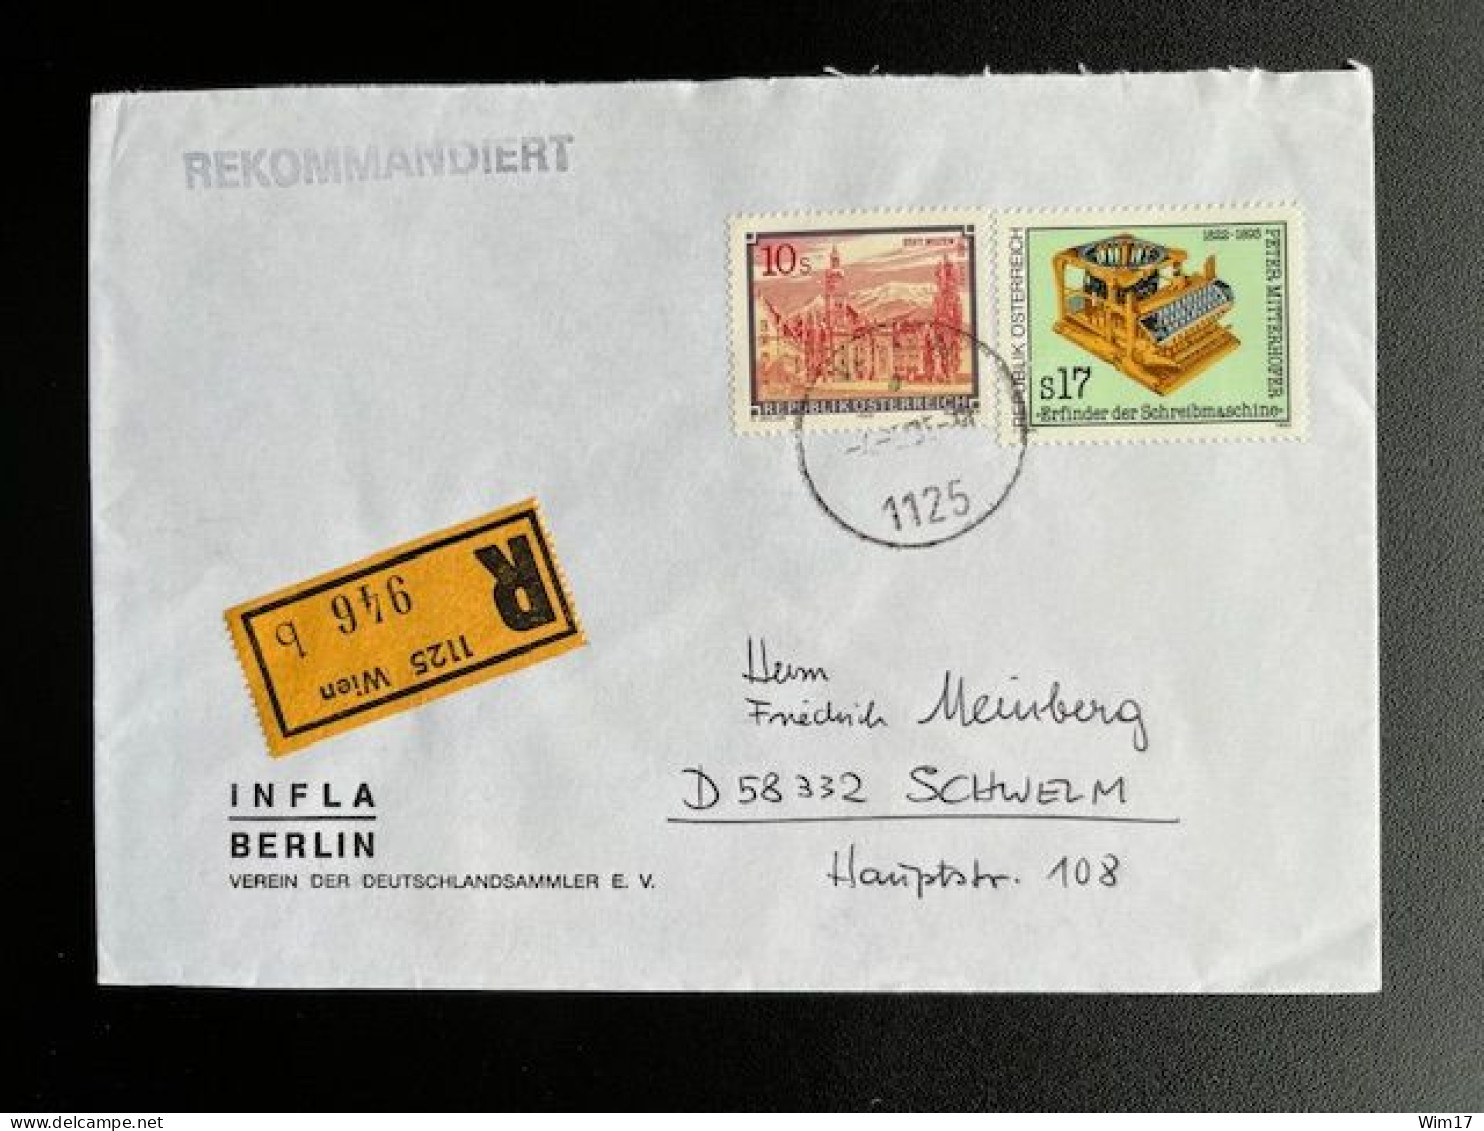 AUSTRIA 1995 REGISTERED LETTER VIENNA WIEN TO SCHWELM 04-05-1995 OOSTENRIJK OSTERREICH EINSCHREIBEN - Briefe U. Dokumente